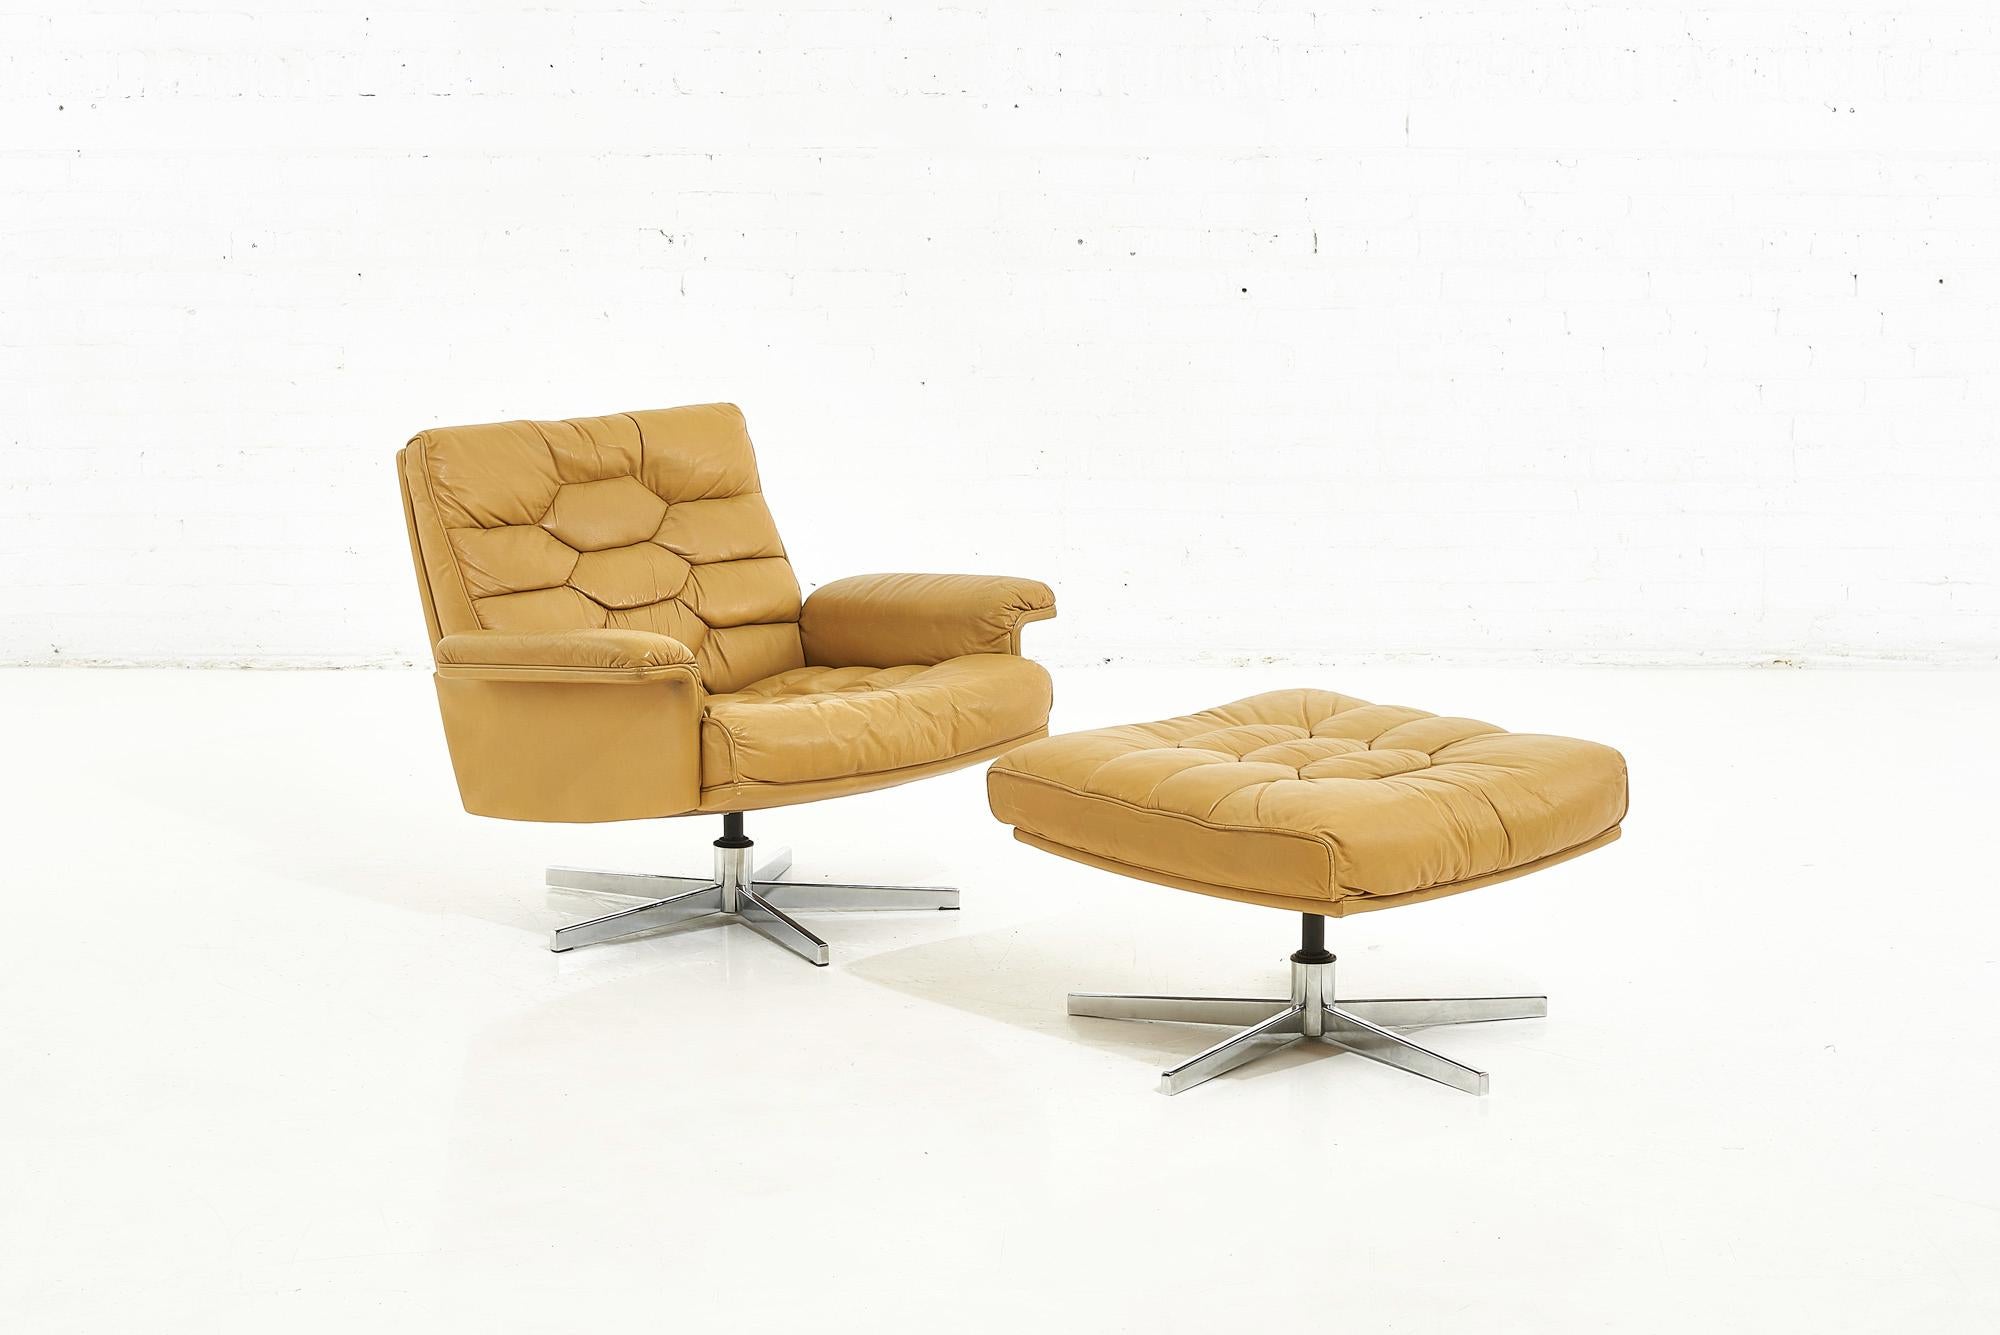 De Sede DS 35 Swivel Chair and Ottoman, Robert Haussmann Switzerland, 1970 1